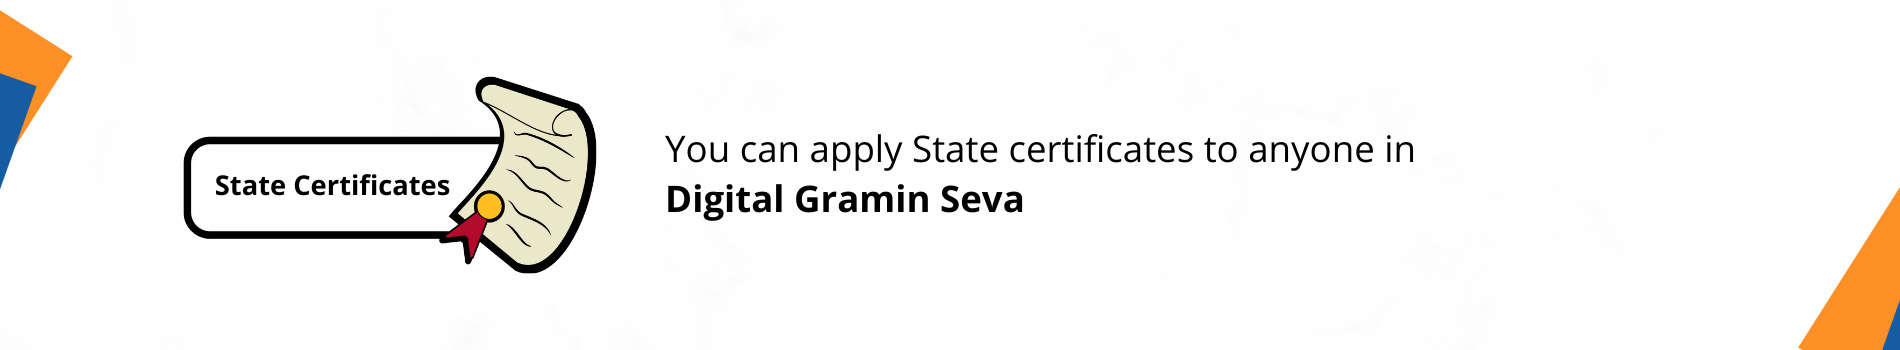 State Certificate